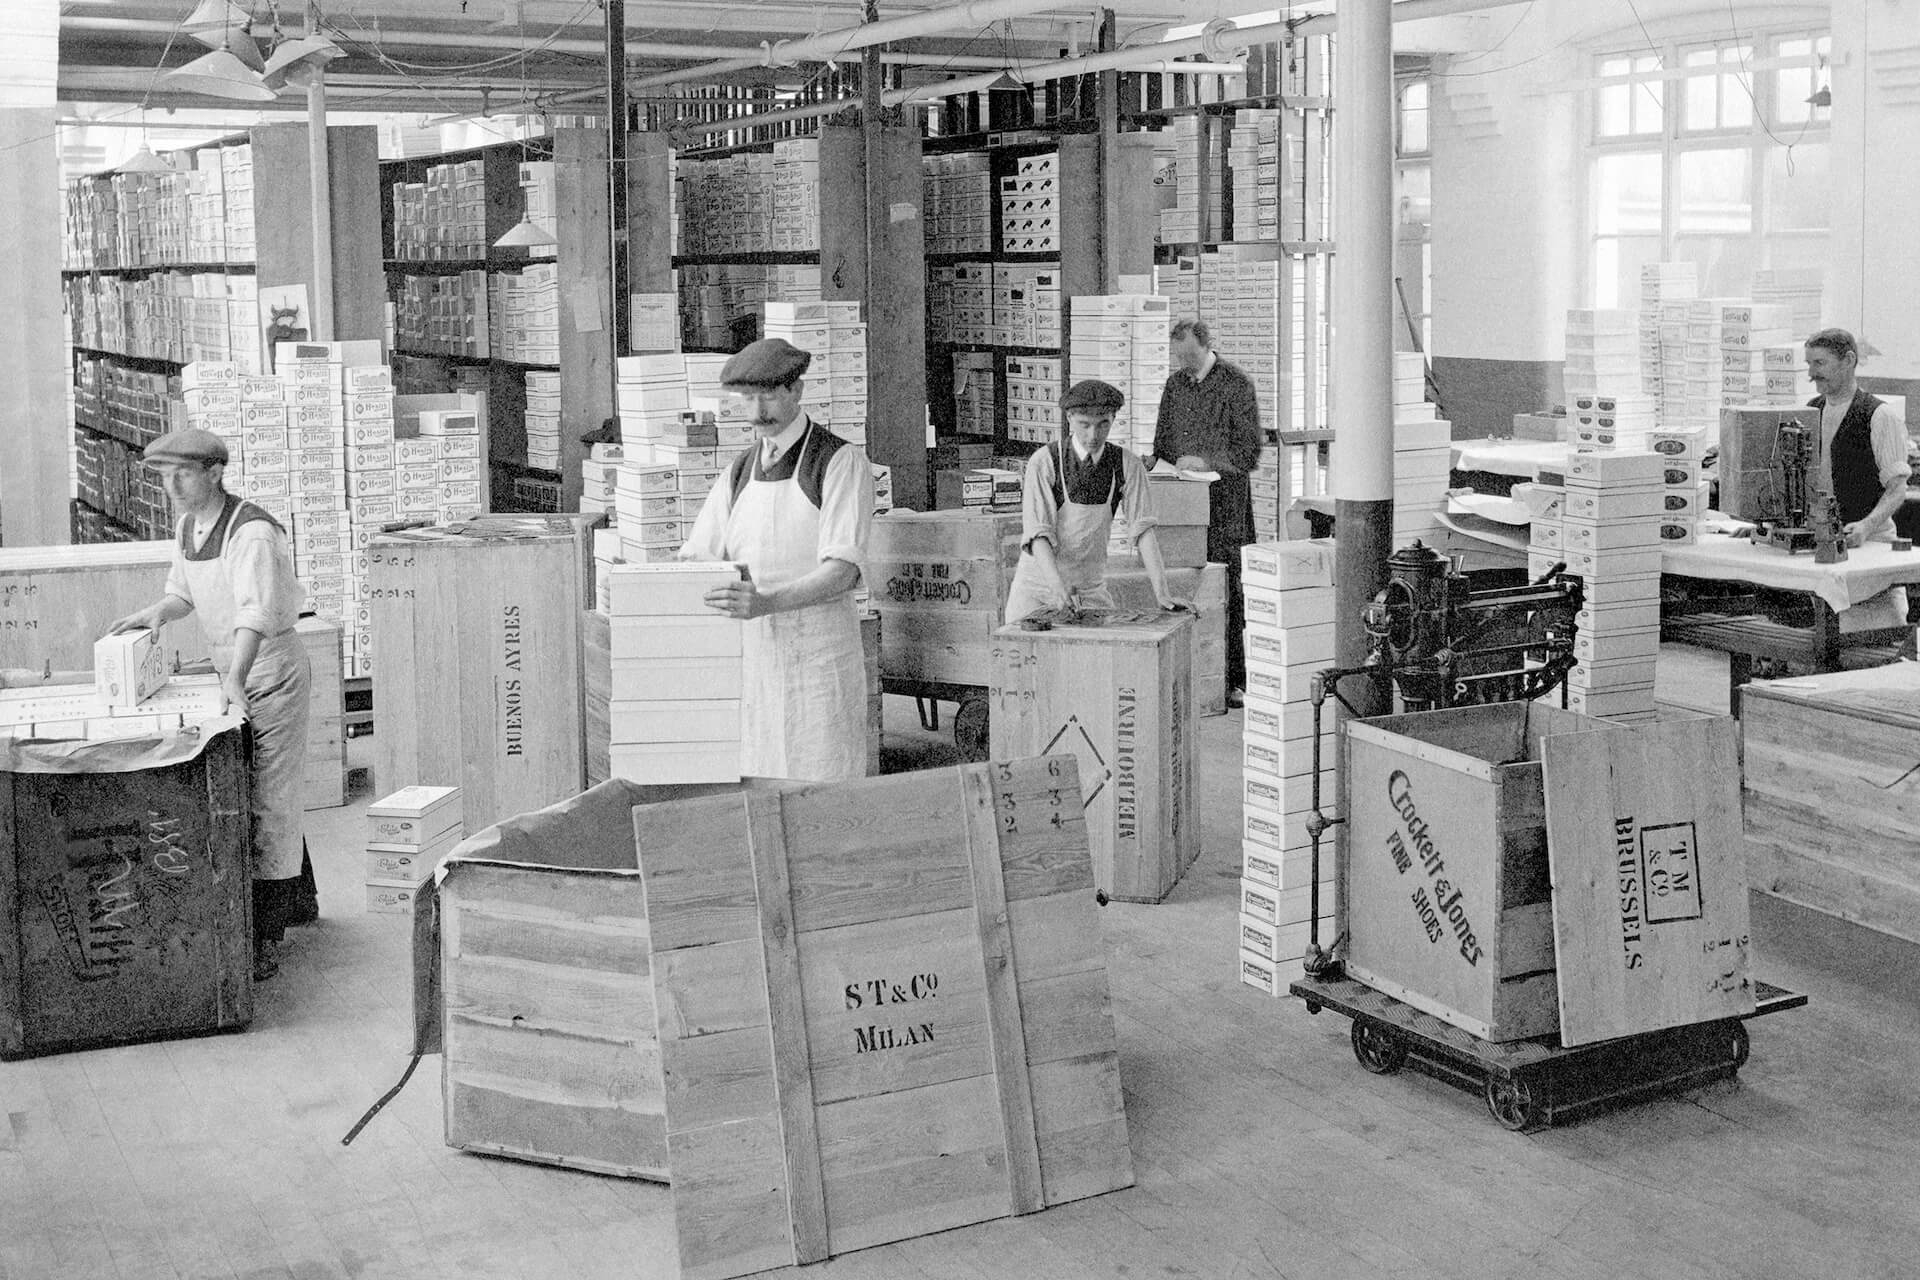 Crocket & Jones packing department in 1920